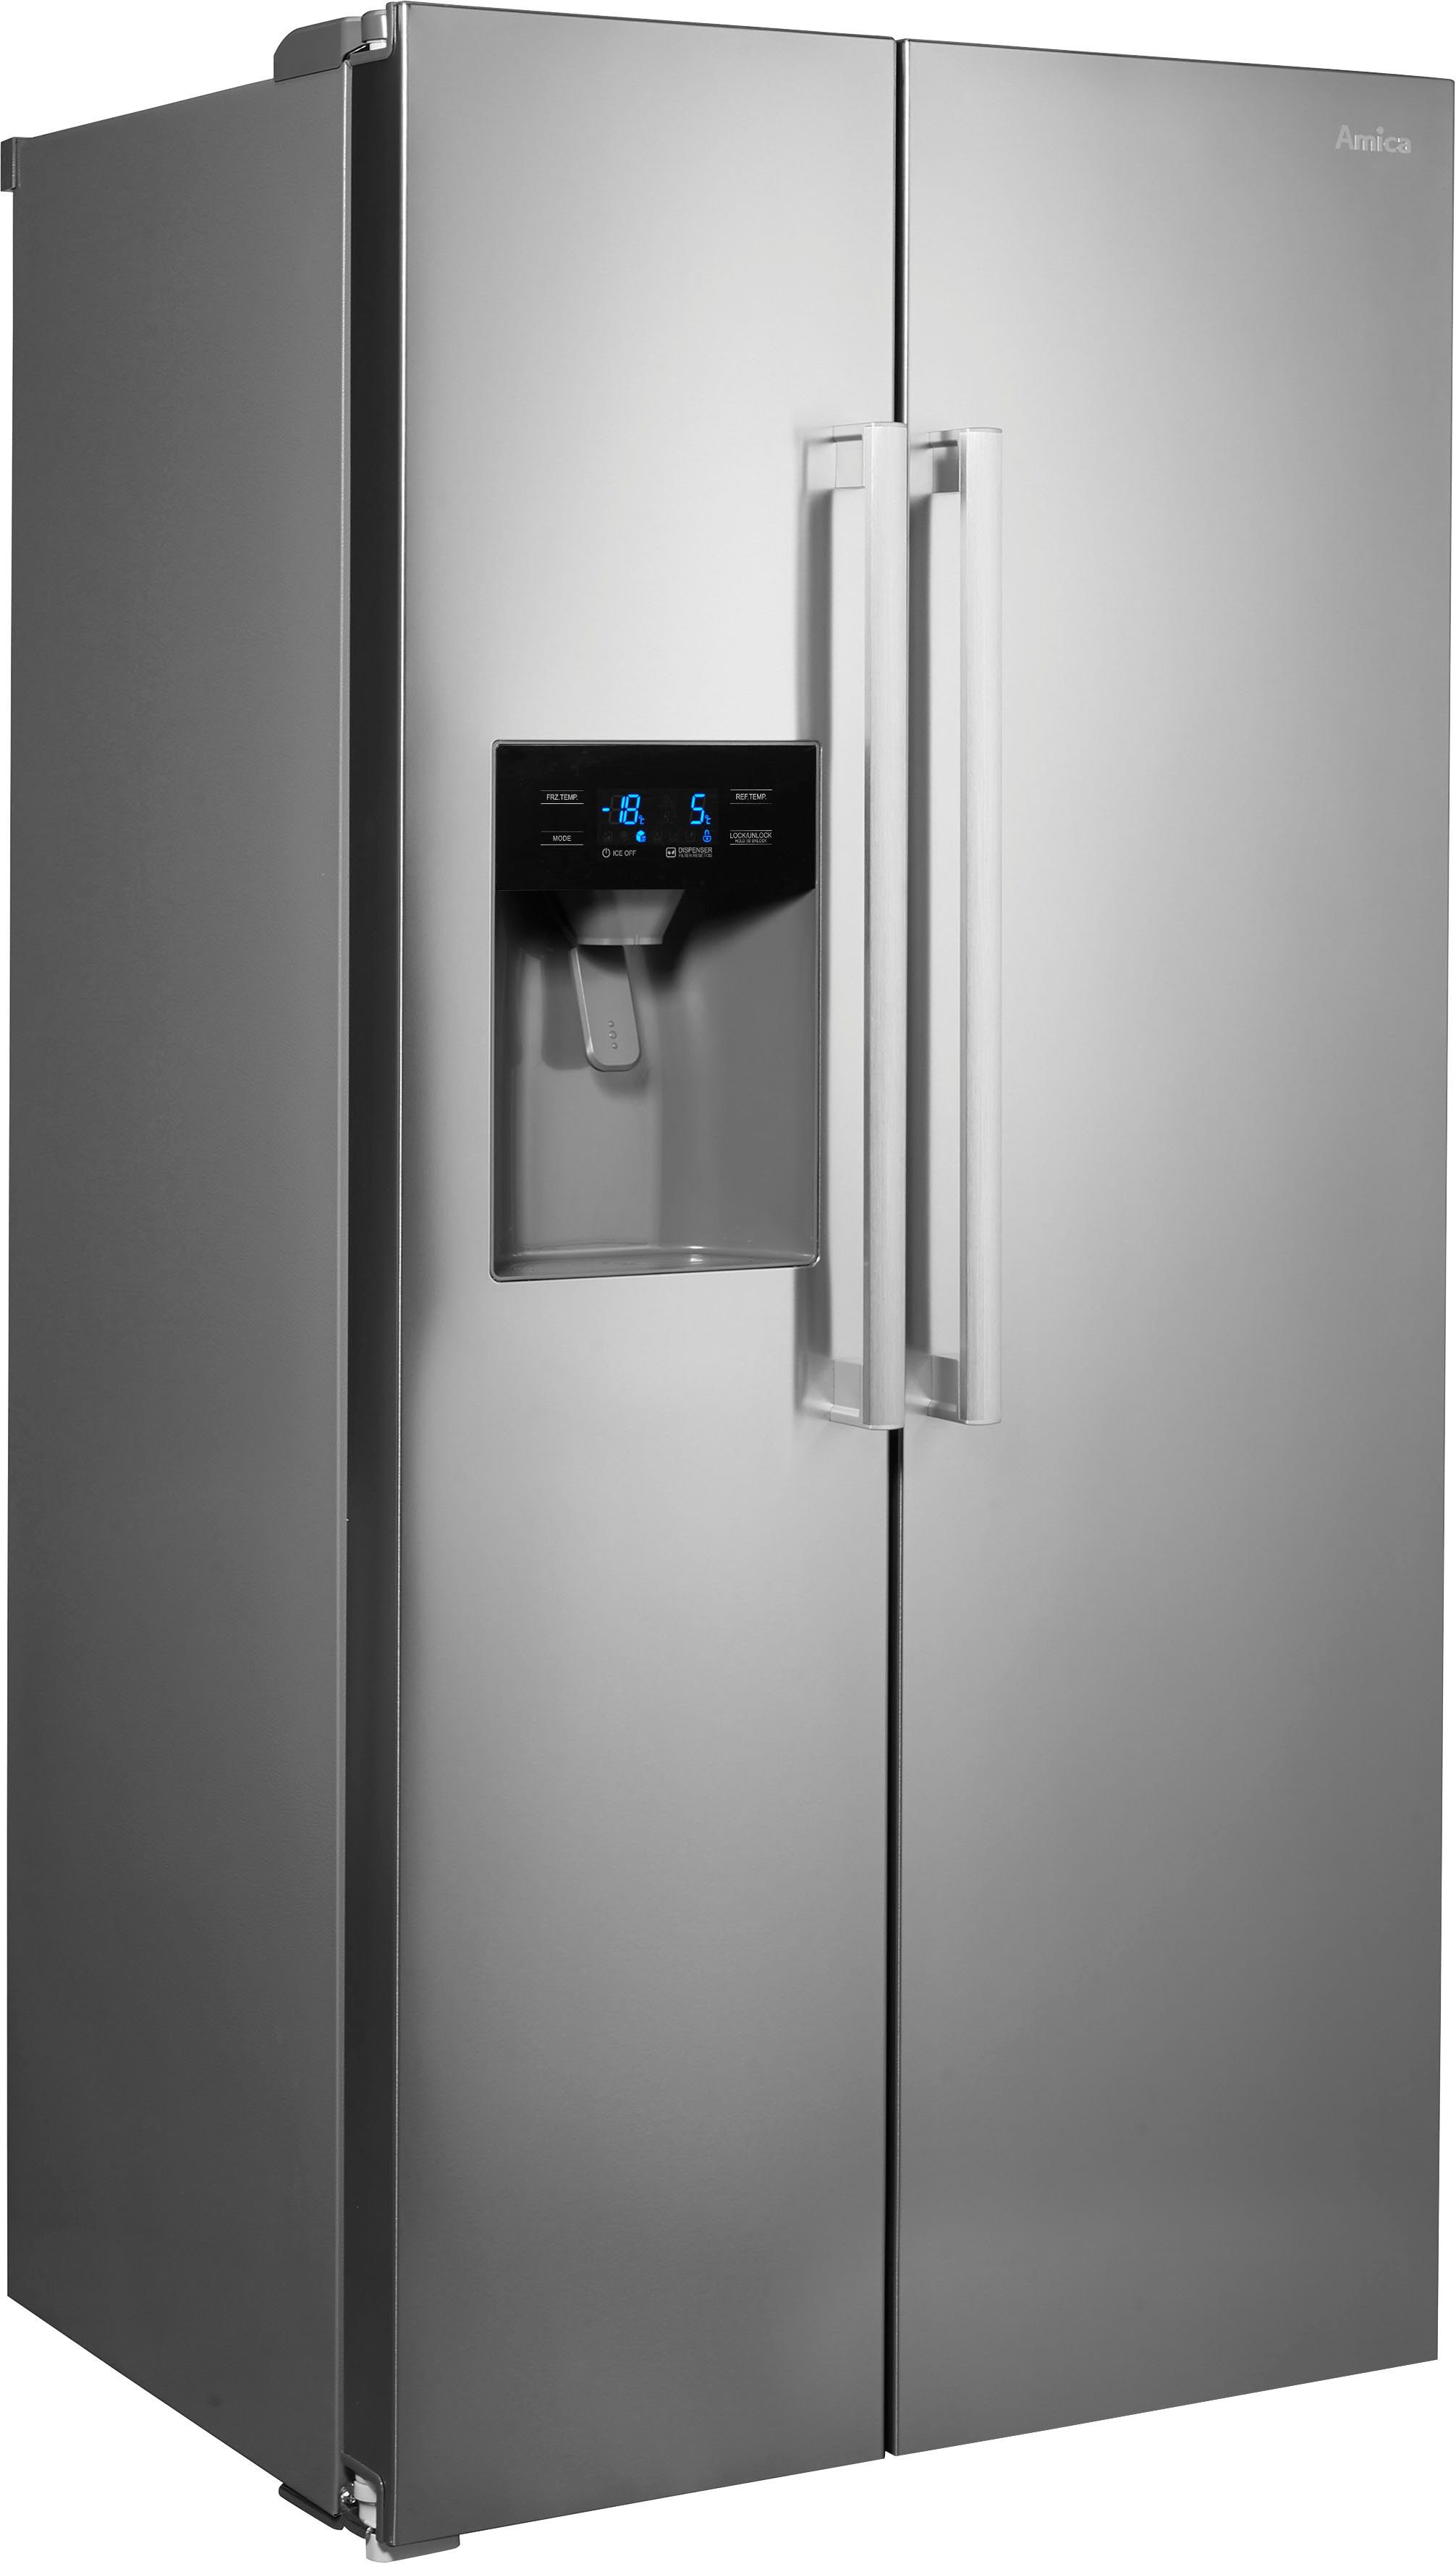 Amica Side-by-Side SBS 398 150 E, 176,5 cm hoch, 89,7 cm breit | Side-by-Side Kühlschränke